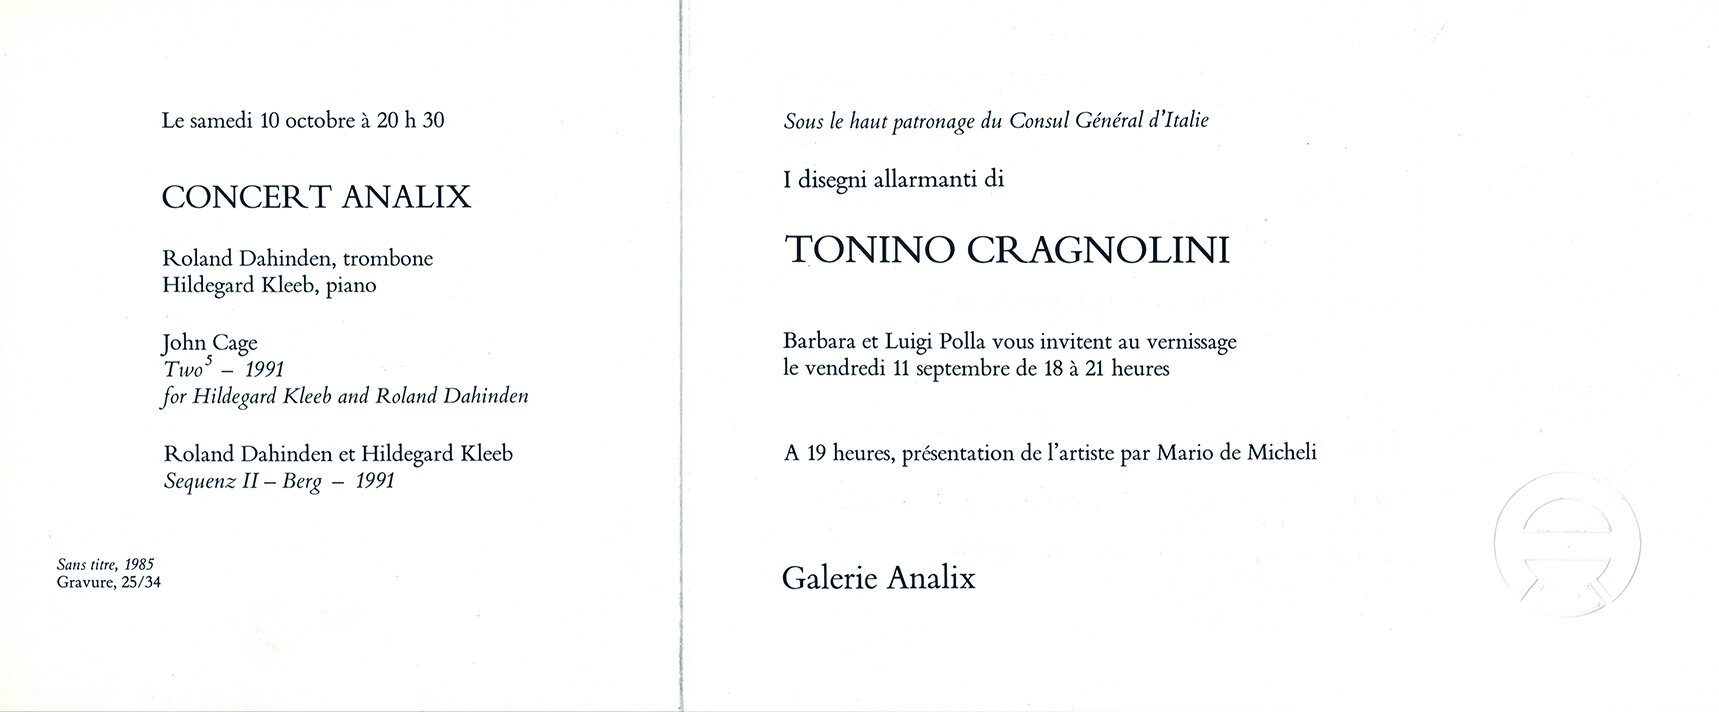 CARTONEXPO_1992_Tonino Cragnolini_V.jpg